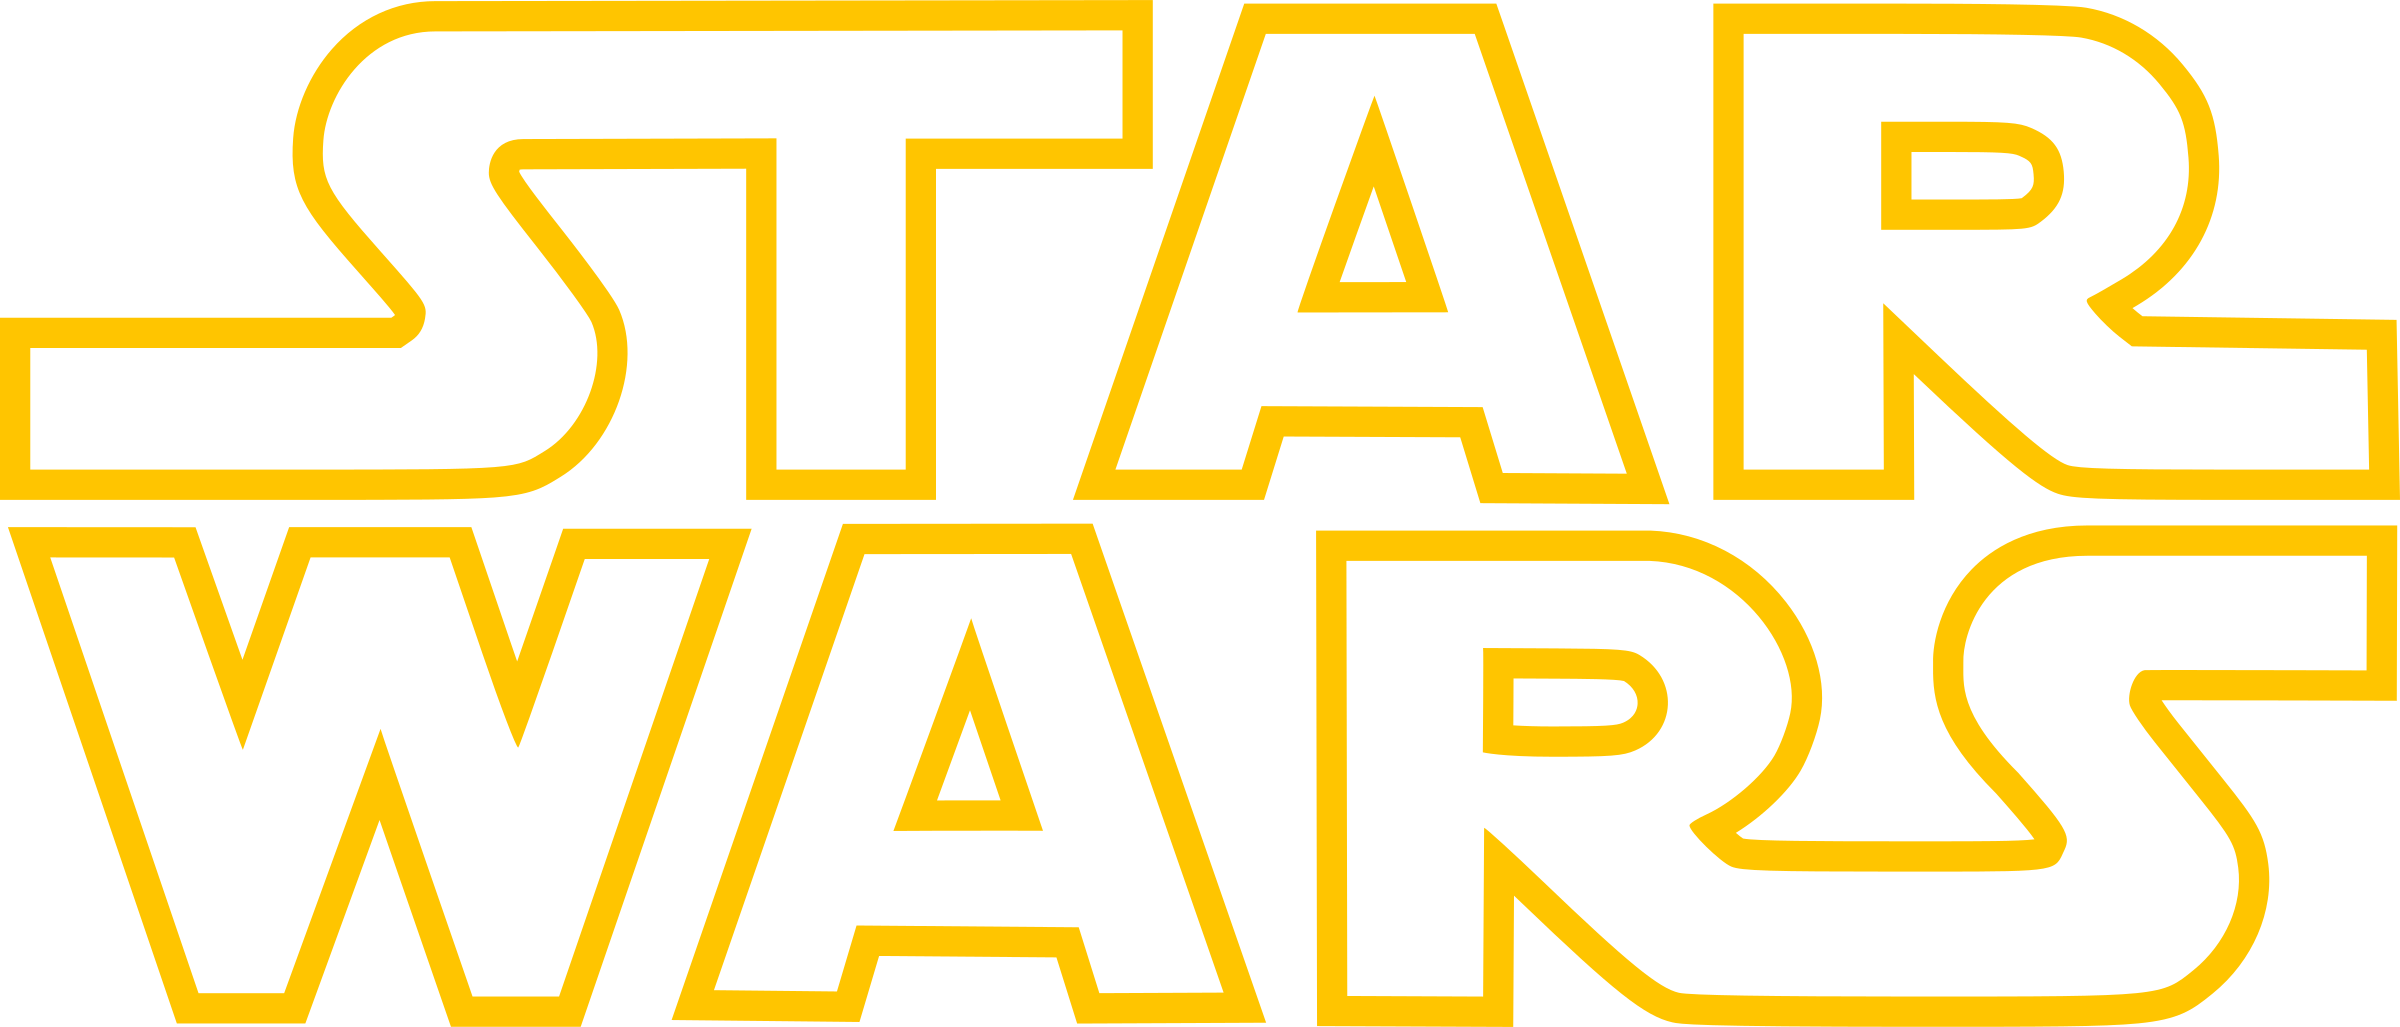 Star Wars Logotipo PNG imagem de Alta Qualidade